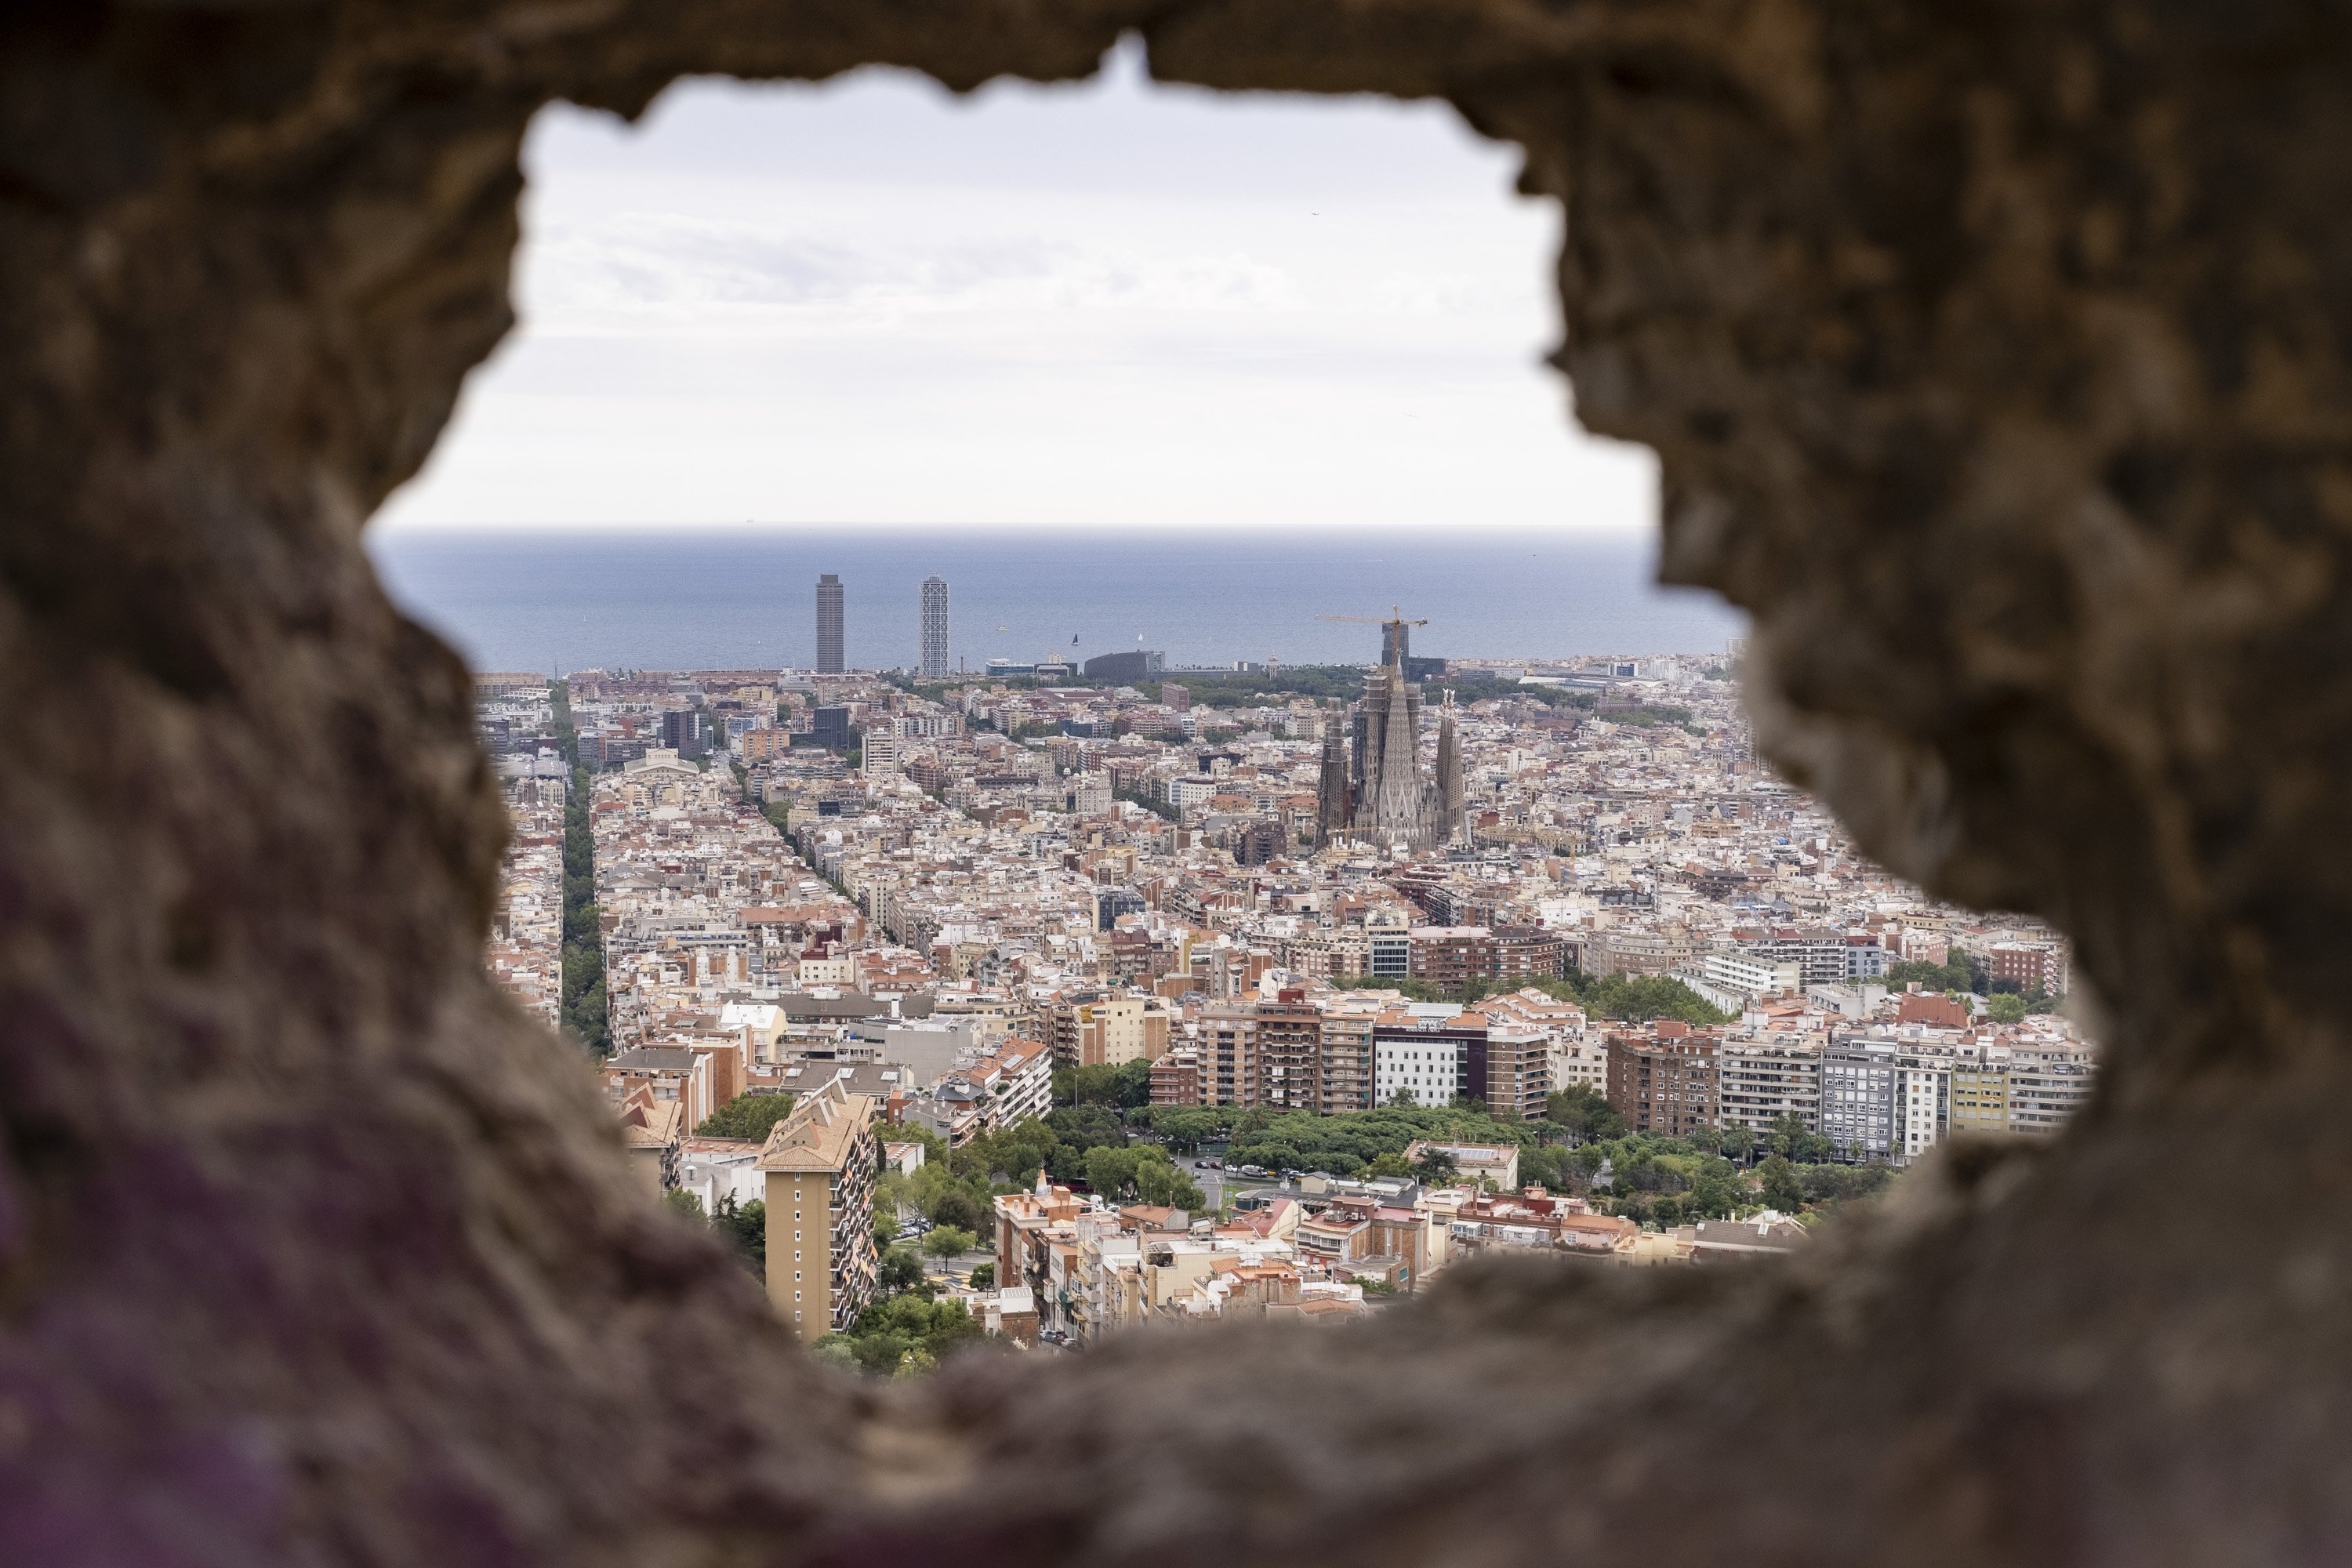 Barcelona recuperarà dos regidors el 2027 si manté la població actual